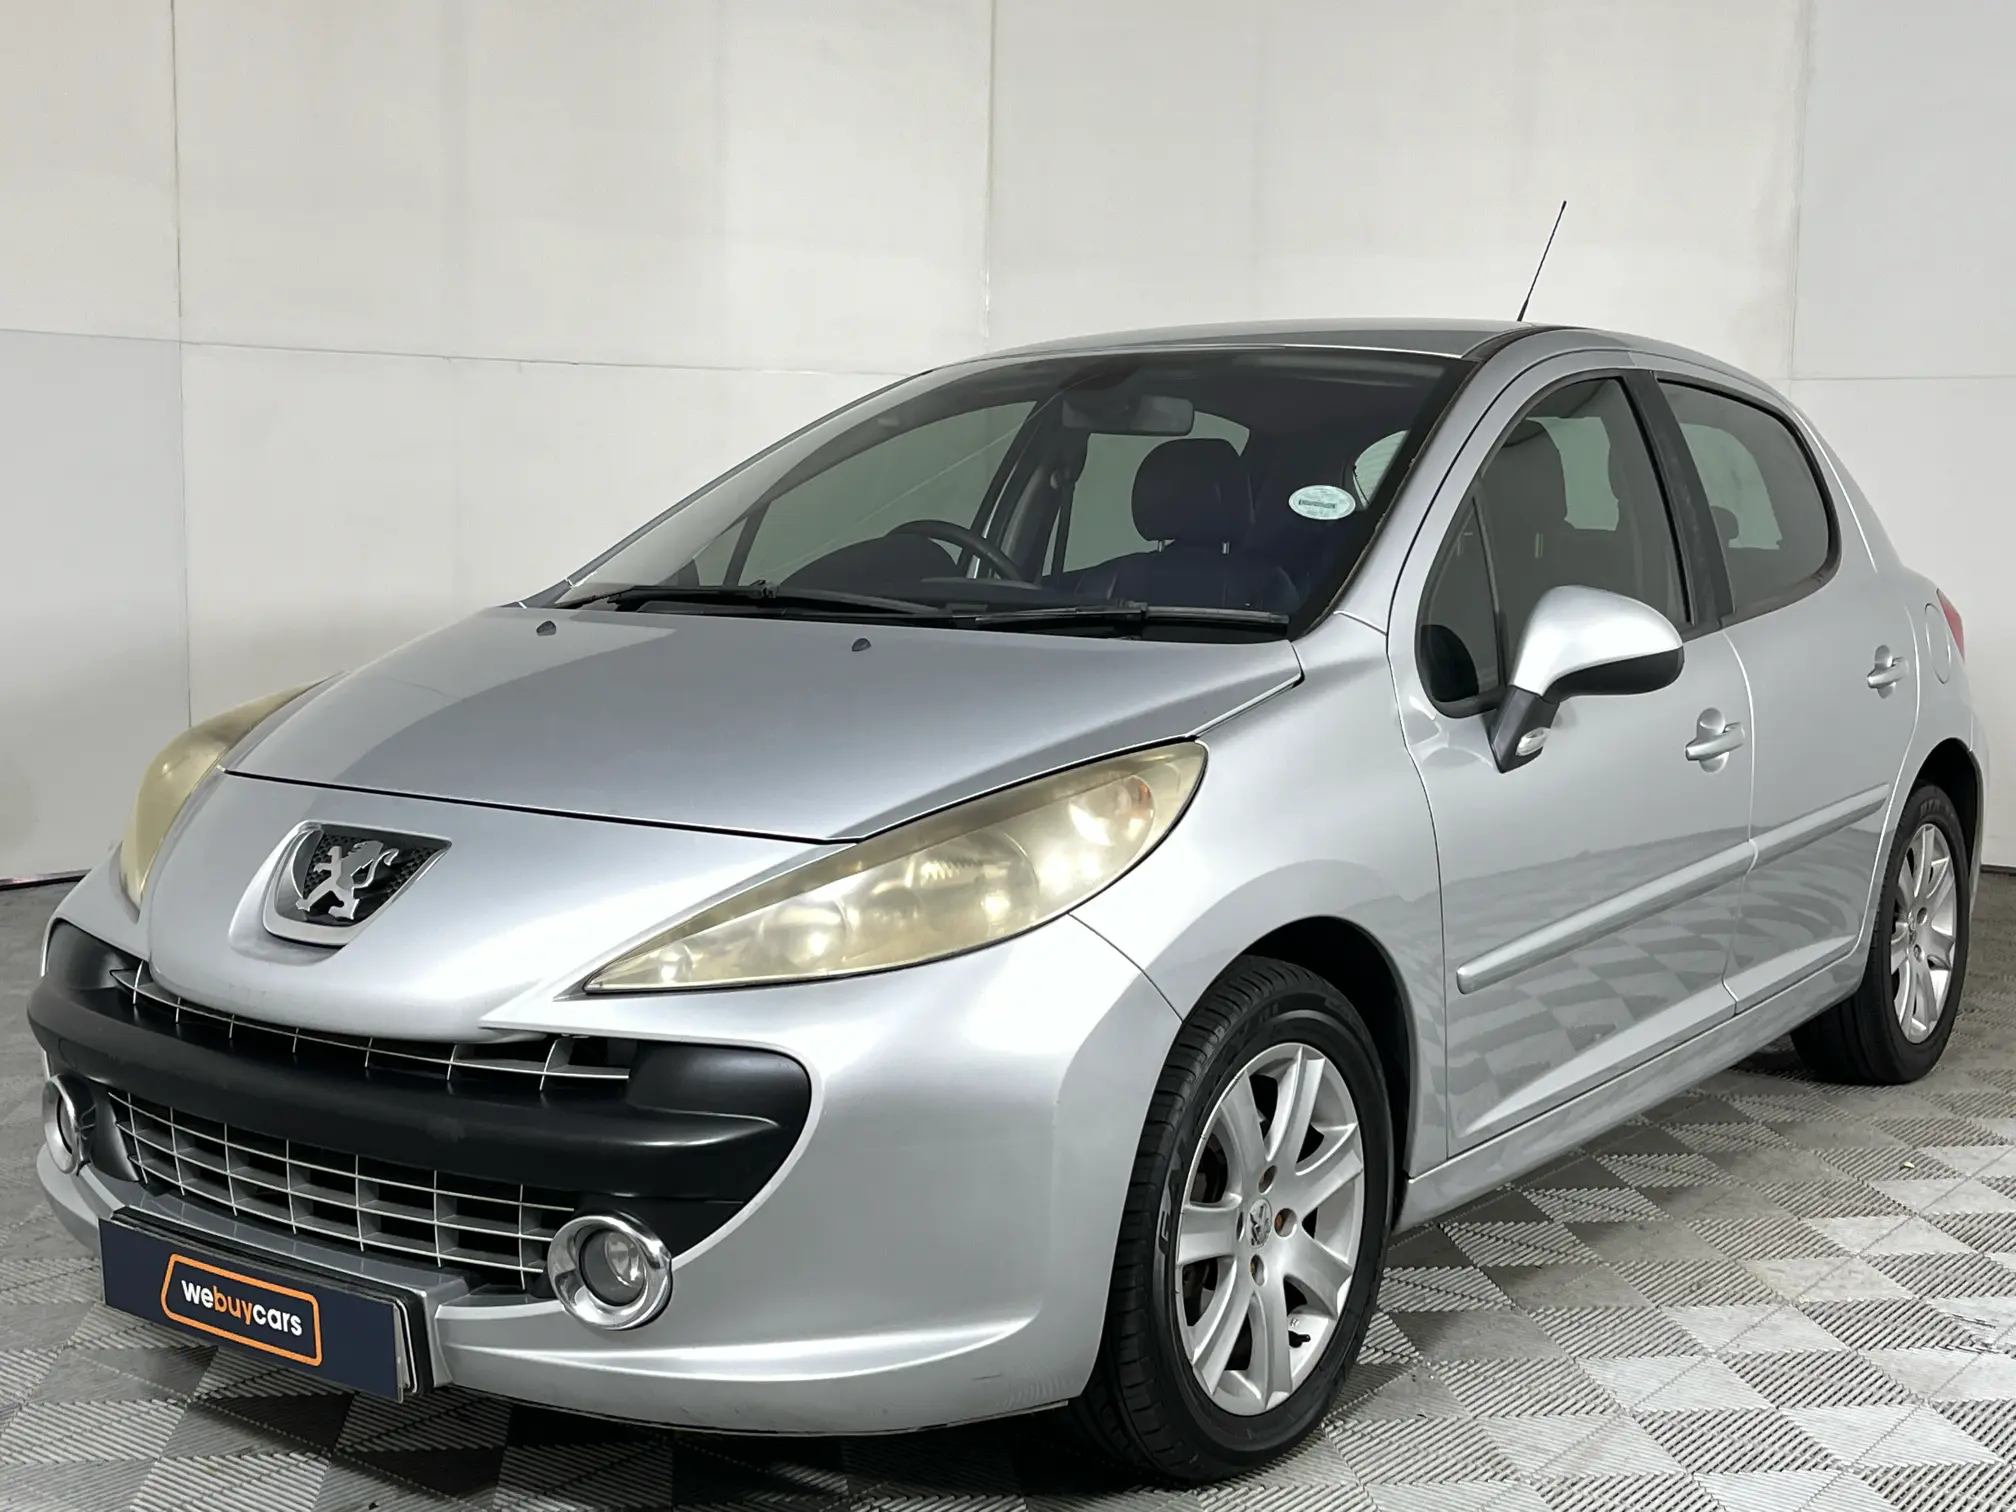 2008 Peugeot 207 1.6 HDI XS